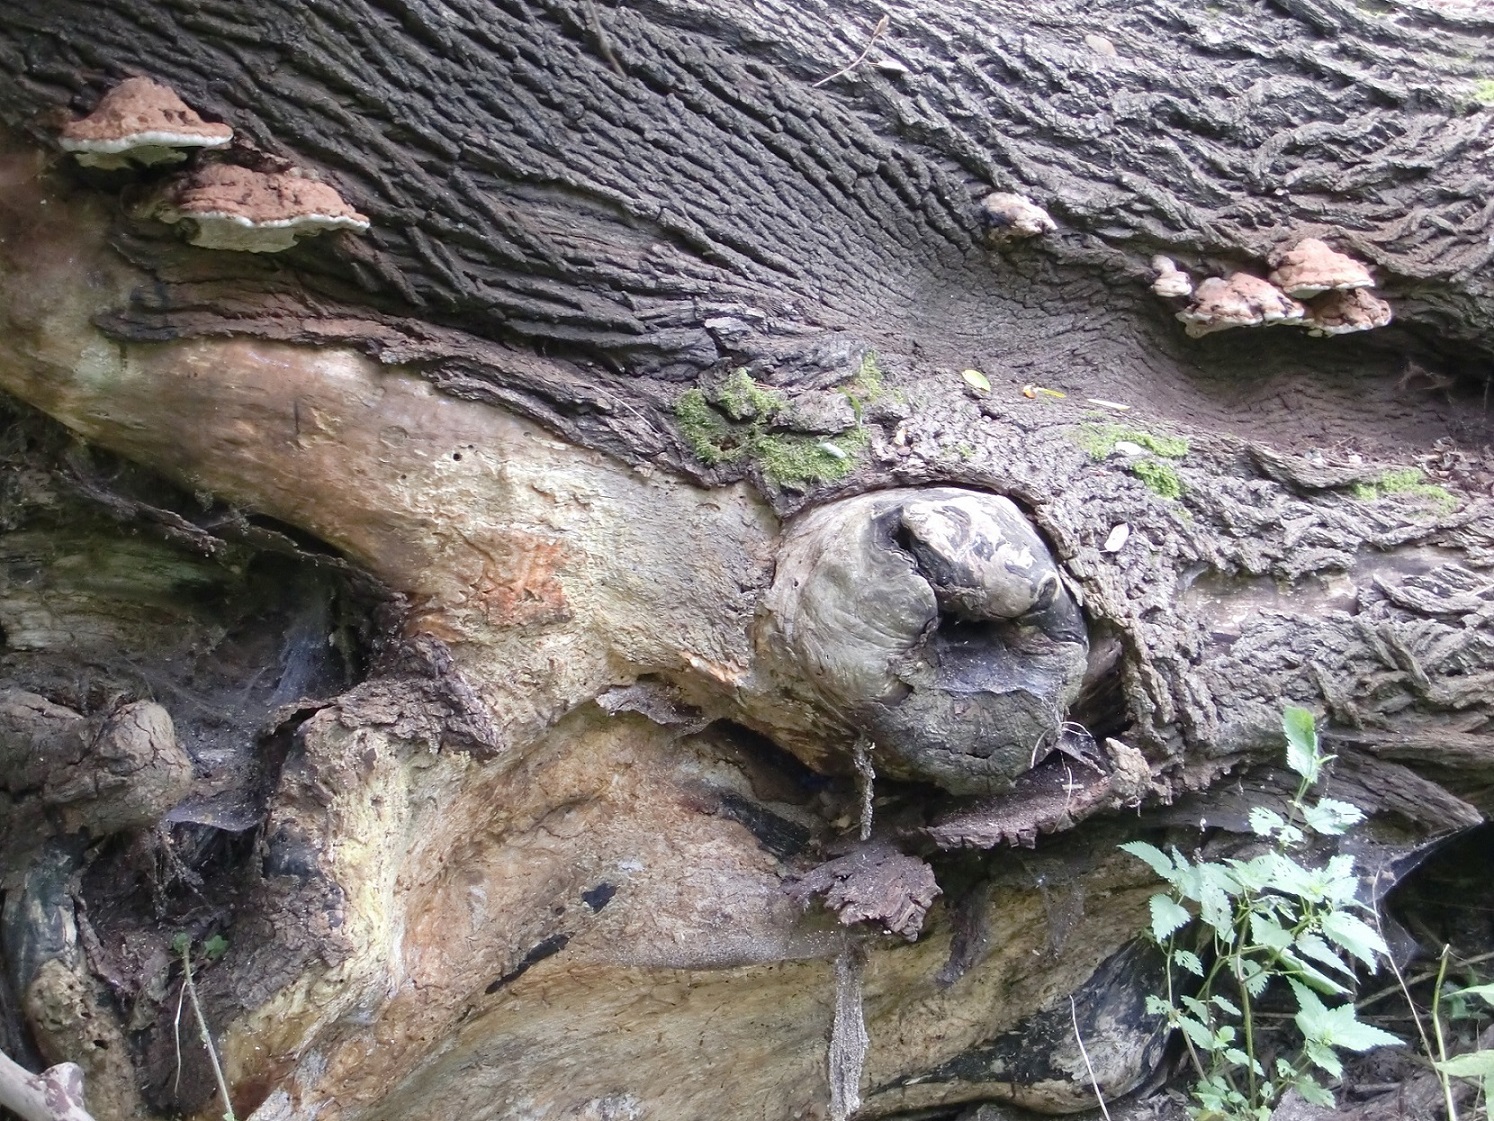 Man sieht den Ausschnitt eines umgestürzten Baumes mit der Besidelung durch Pilze und Moos.